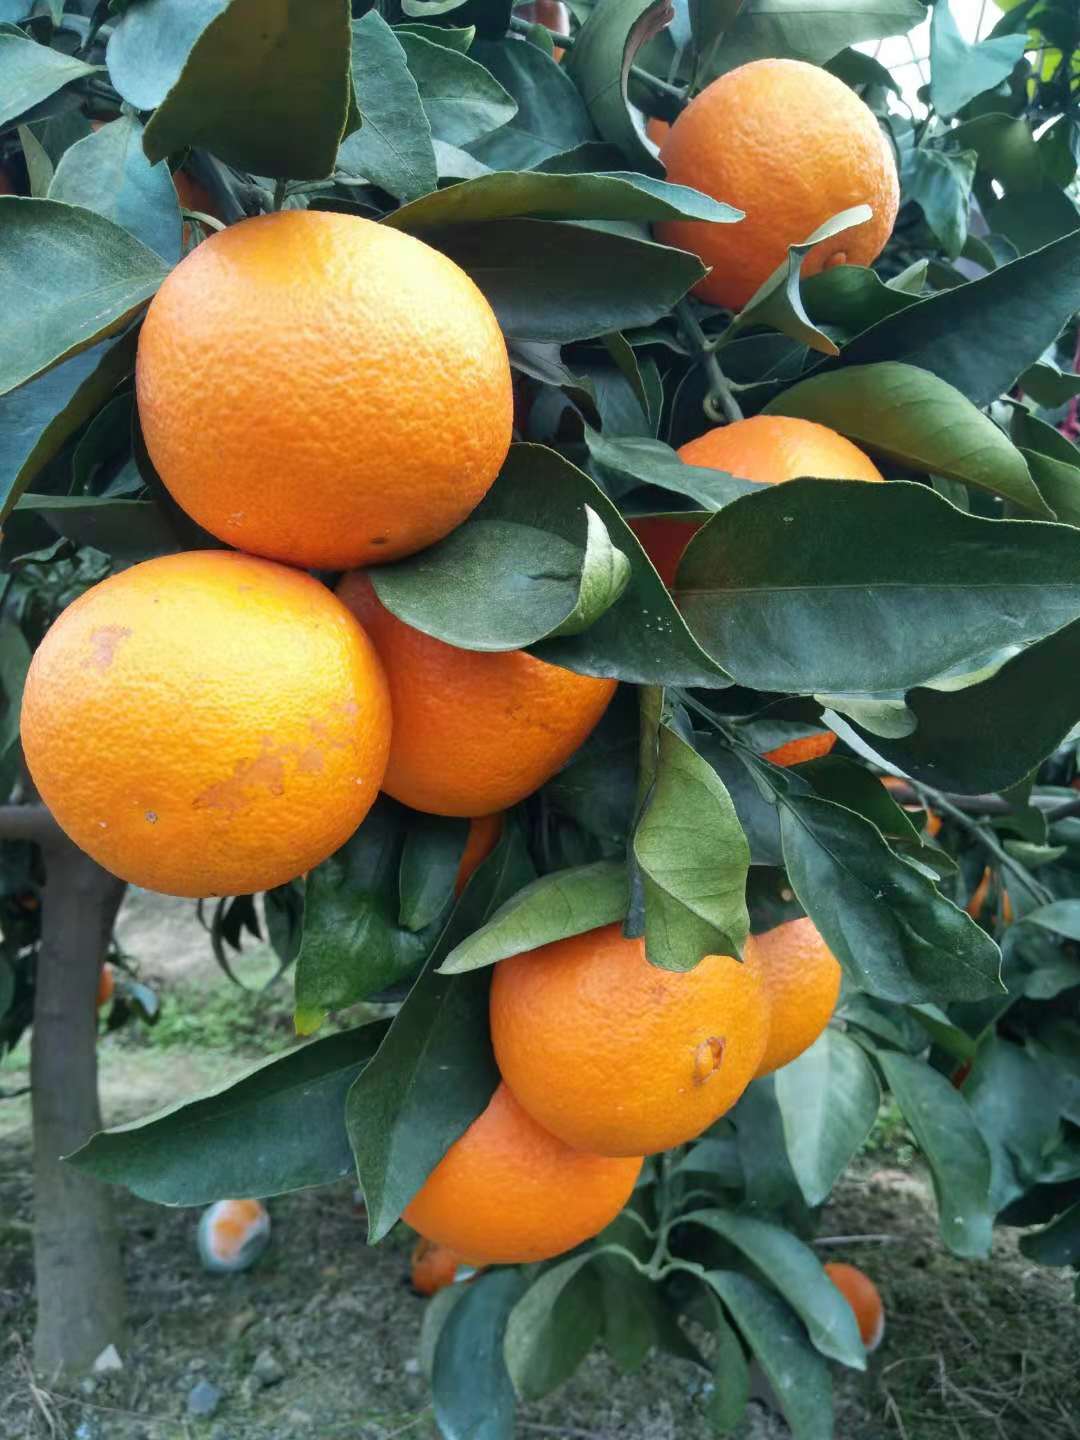 浙江橘子苗木生产厂家  台州橘子苗木哪家好 桔子苗